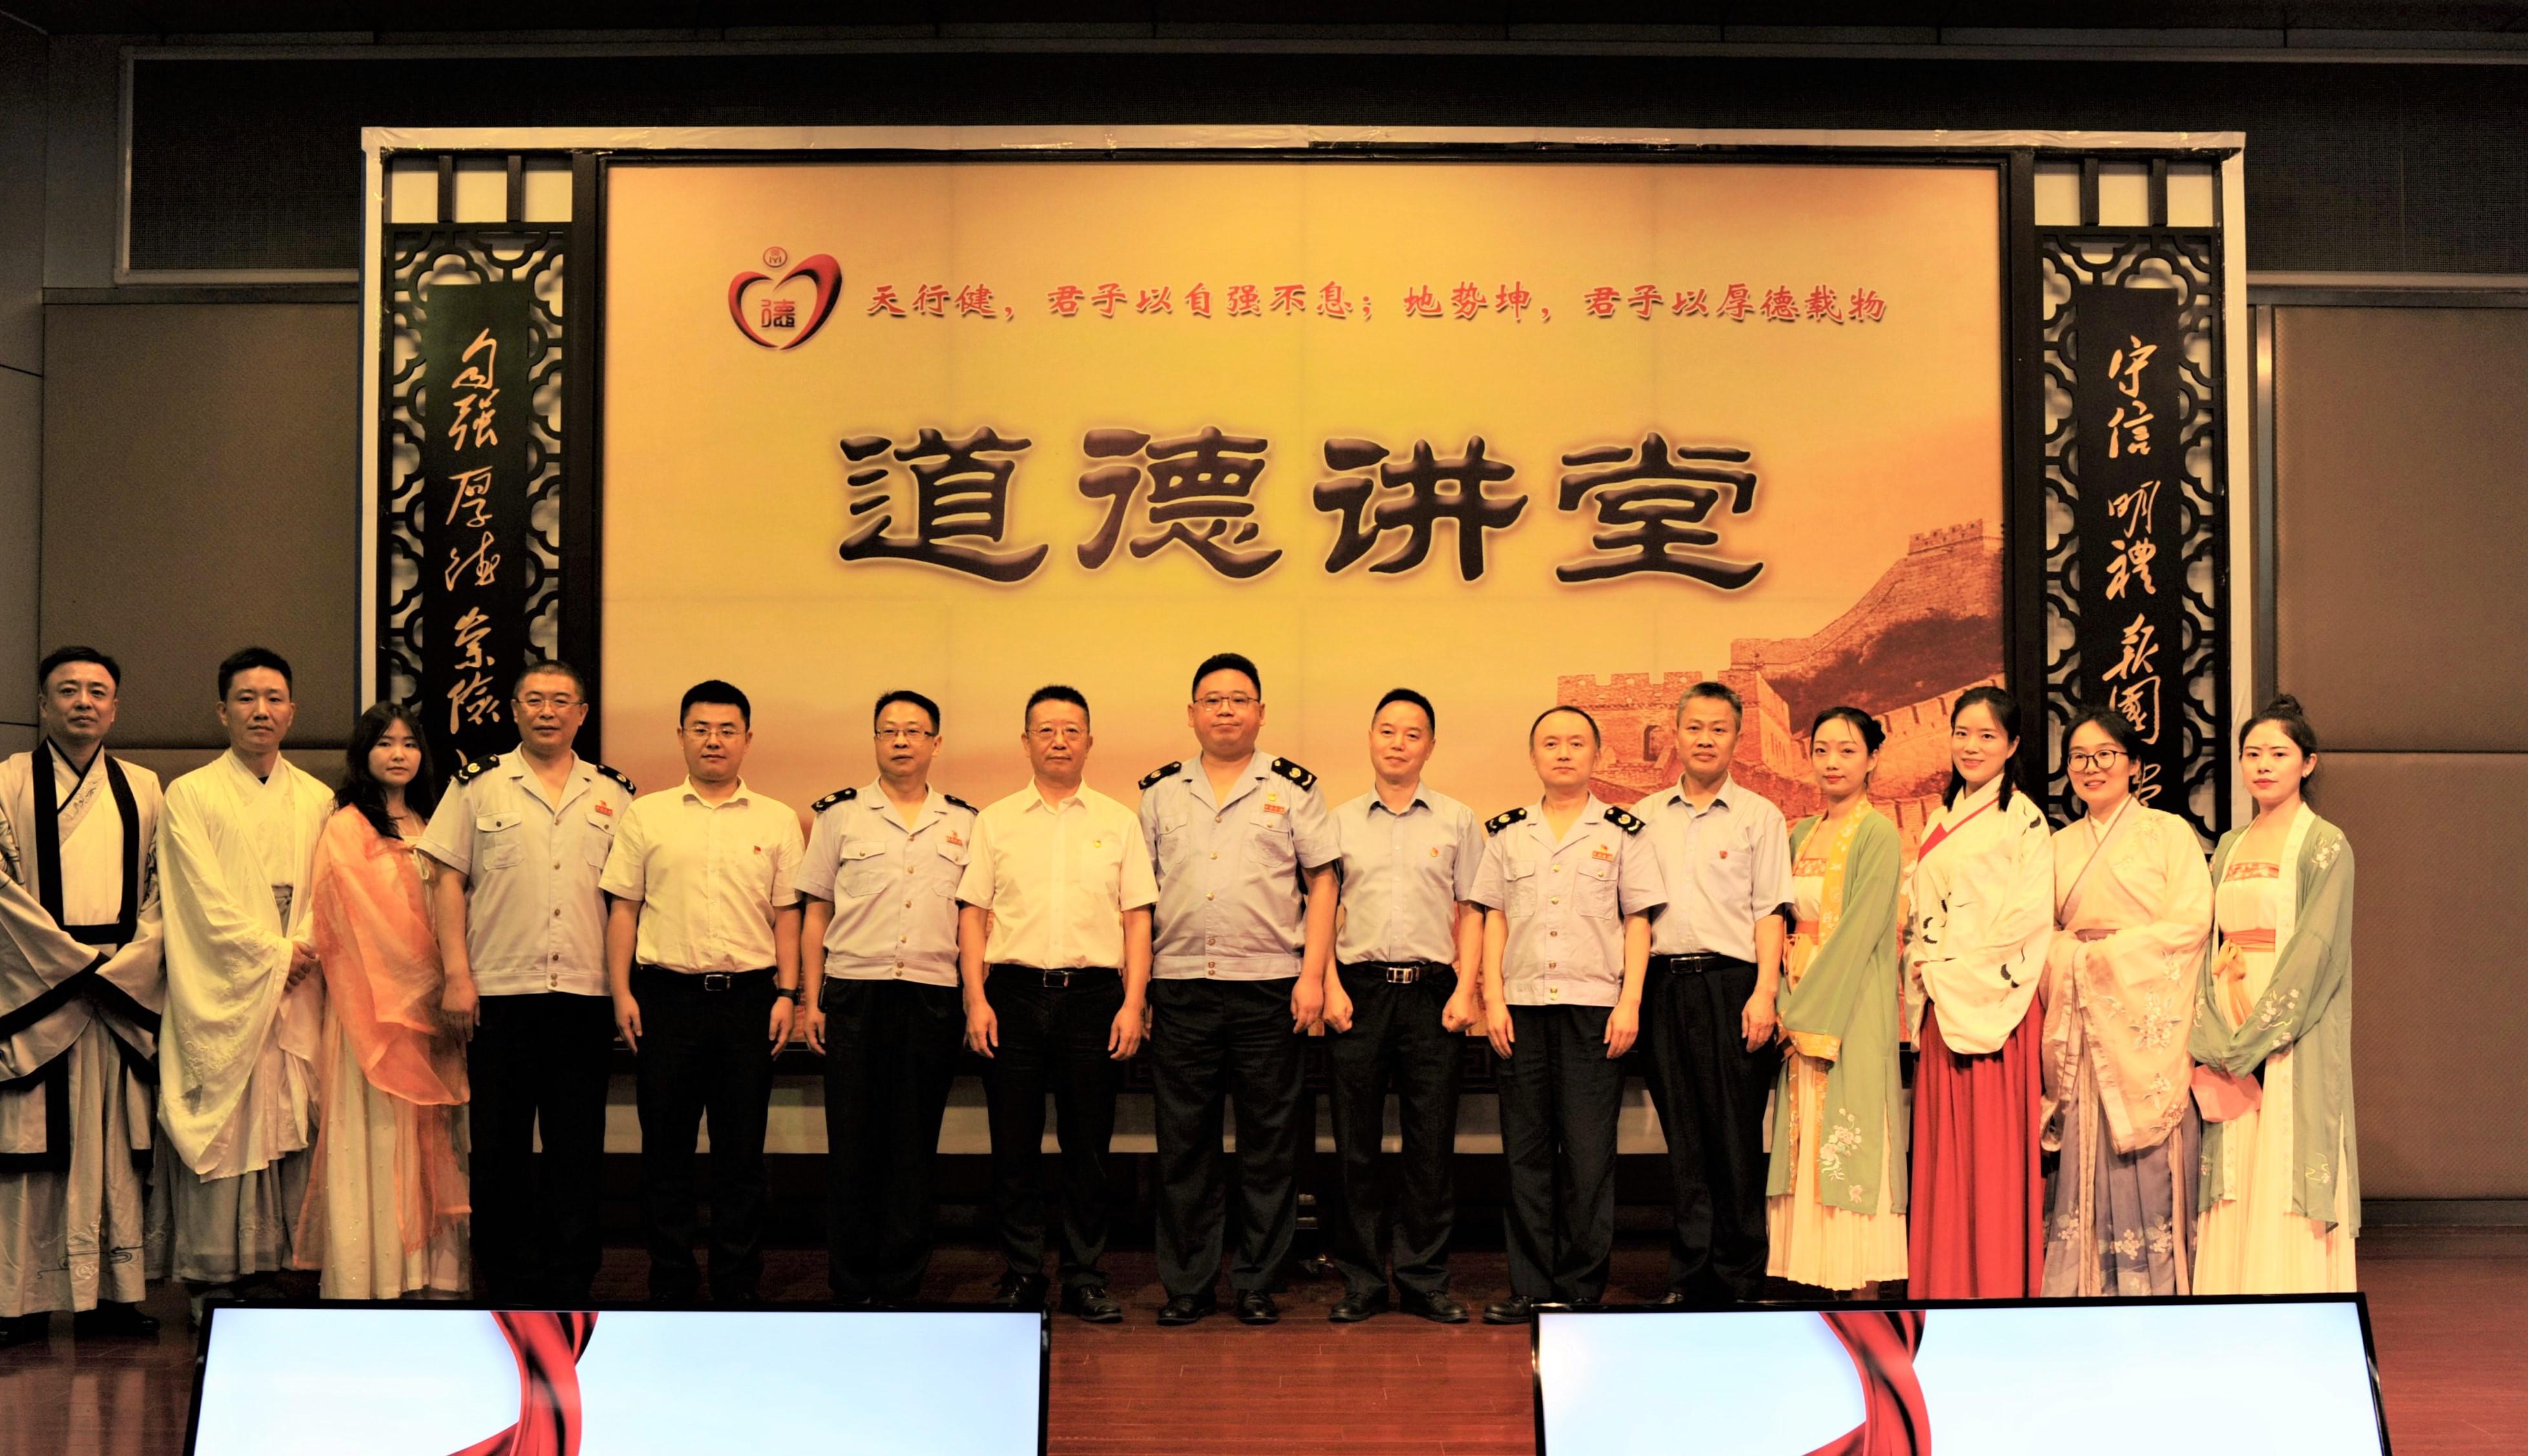 涪城农信联社与涪城区税务局联合开展支部共建活动